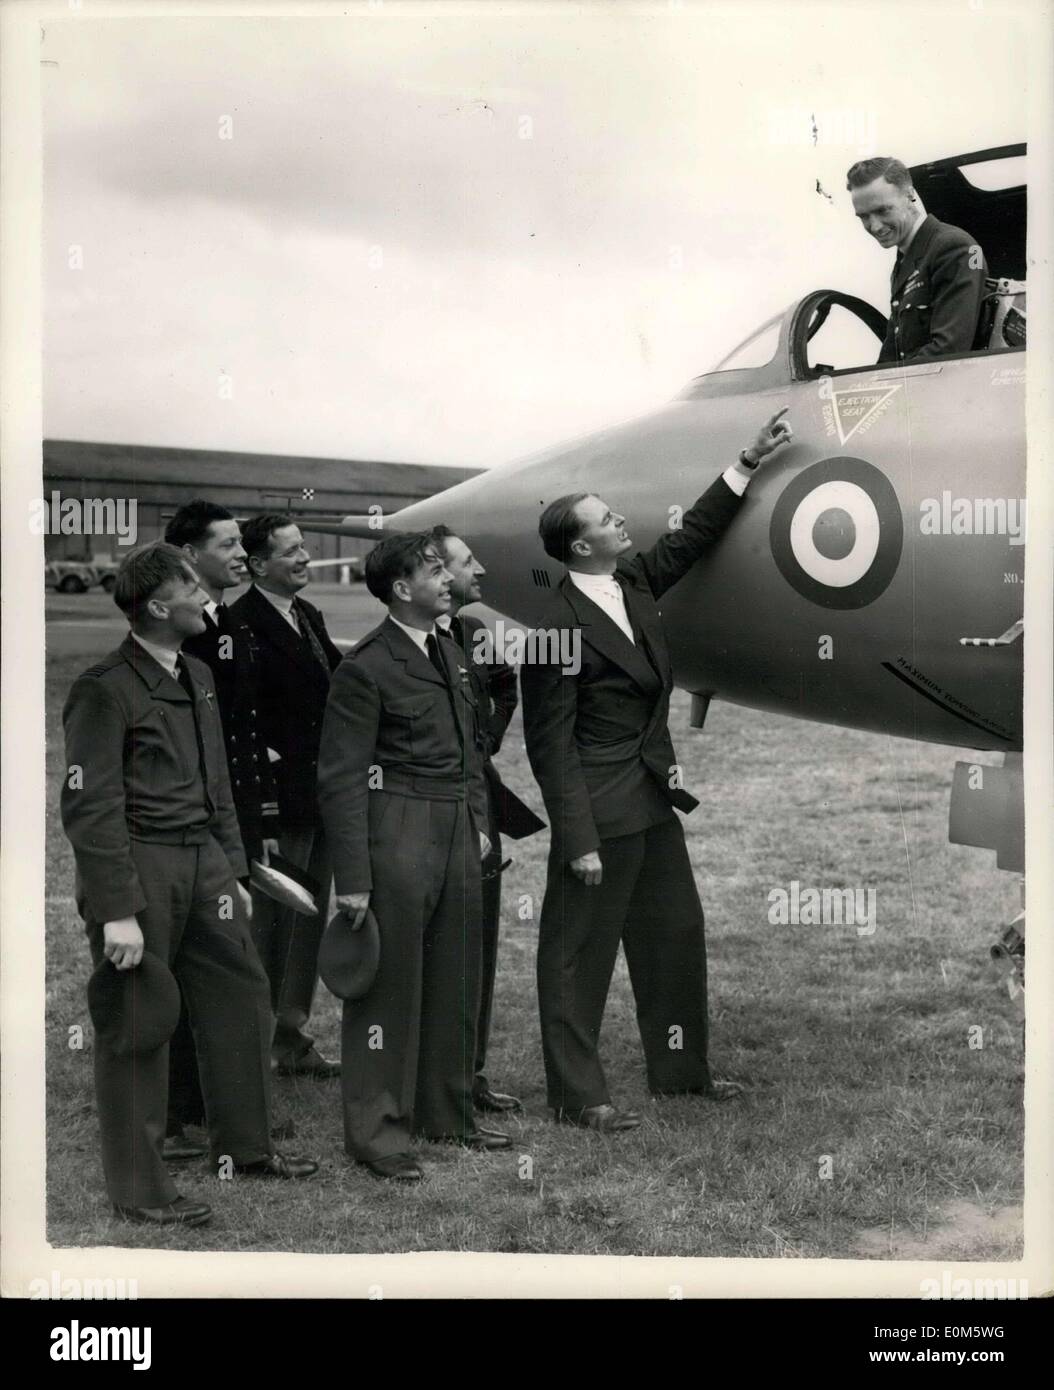 Sept. 09, 1953 - Gesellschaft von britischen Flugzeugen Konstruktoren? Show in Farnborough. Foto zeigt: Sitzen im Cockpit eine Avro-Delta ist sq h.t. Murley Ldr., D.F.C., AFC unterhielt sich mit Co-Piloten von Avro-Delta-Team. Sie sind (L, R) sq Ldr. W. Noble, D.S.C R.N, Herr j.b. Wales, O.B.E, D.F.C., Ft/Lt. j.e. Burton, SQ Ldr. w.j. Potocki, D.F.C. und Herr R.J. Falk, O.B.E, AFC Stockfoto